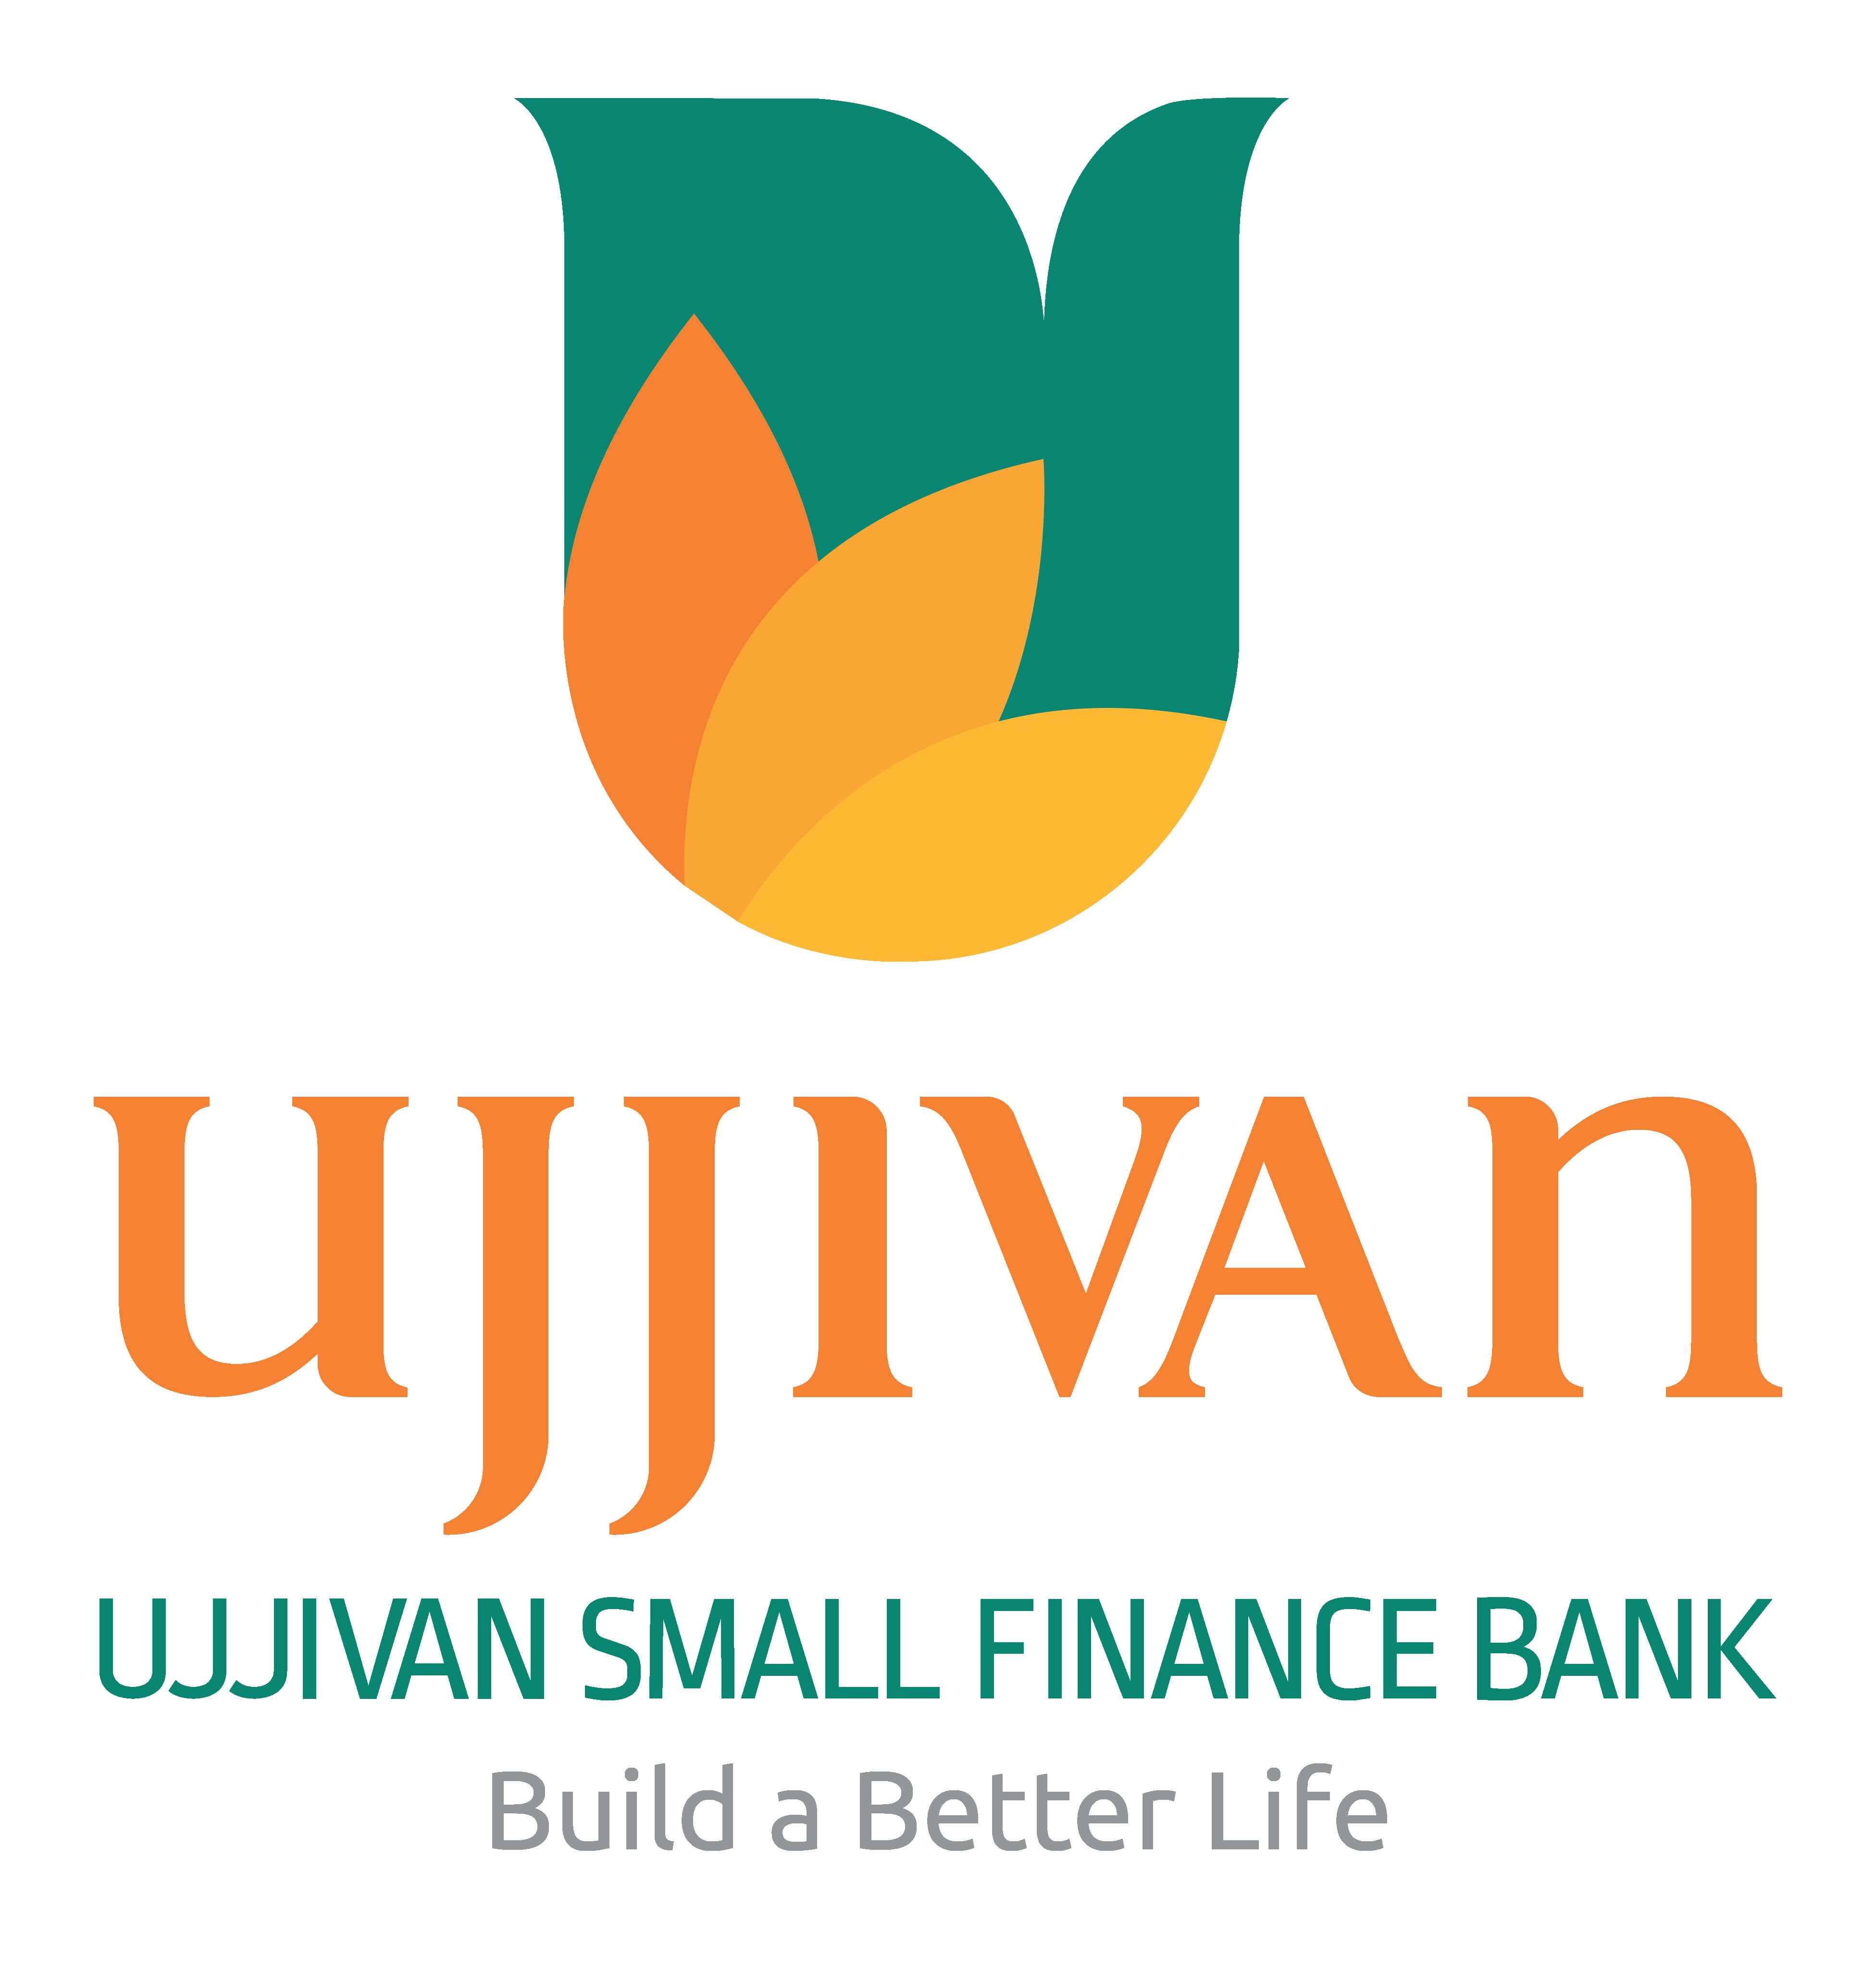 Ujjivan Small Finance Bank Ltd.